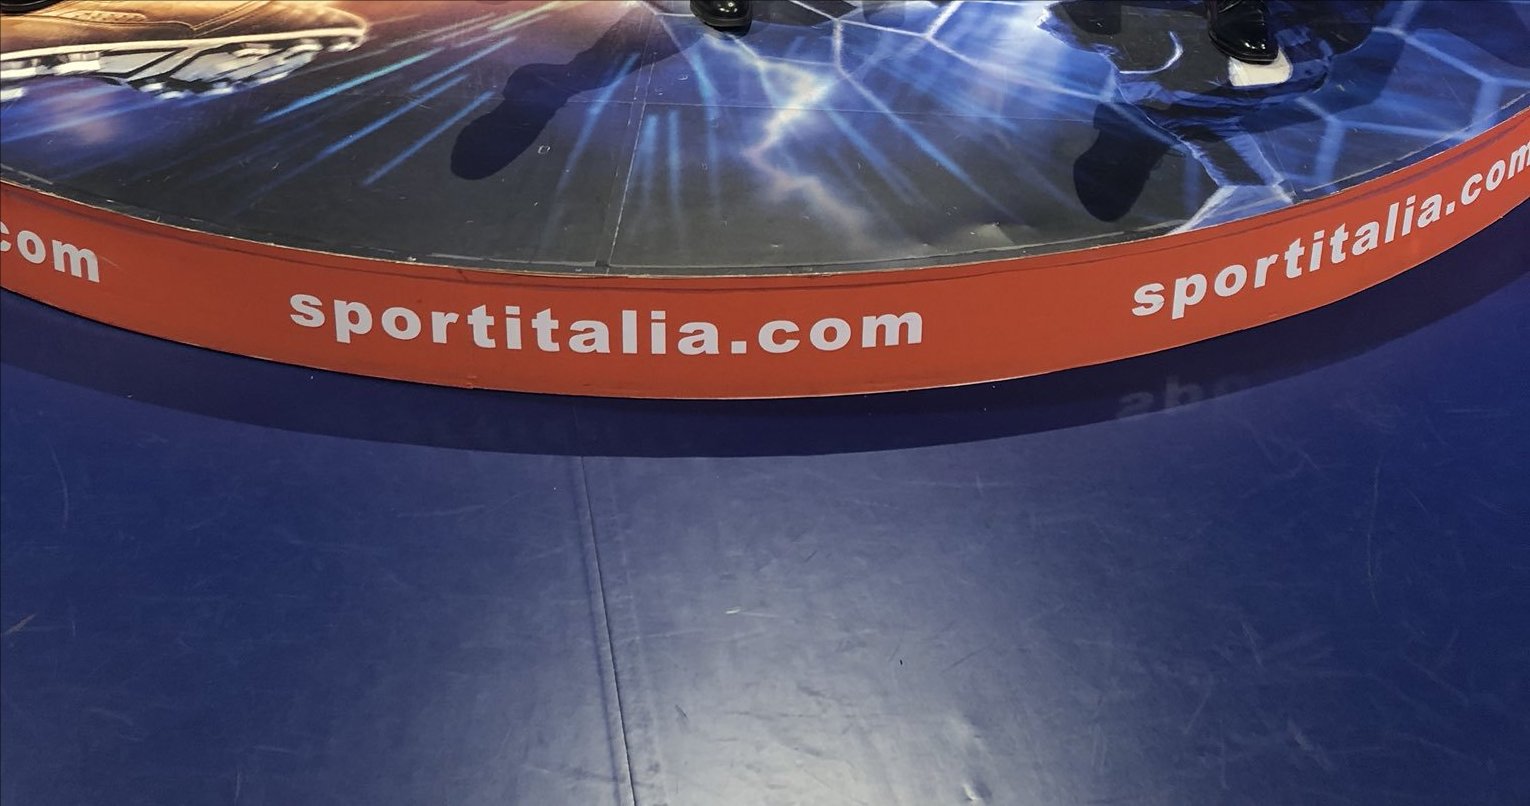 Foto - Sportitalia, Palinsesto Calcio dal 1 al 3 Novembre